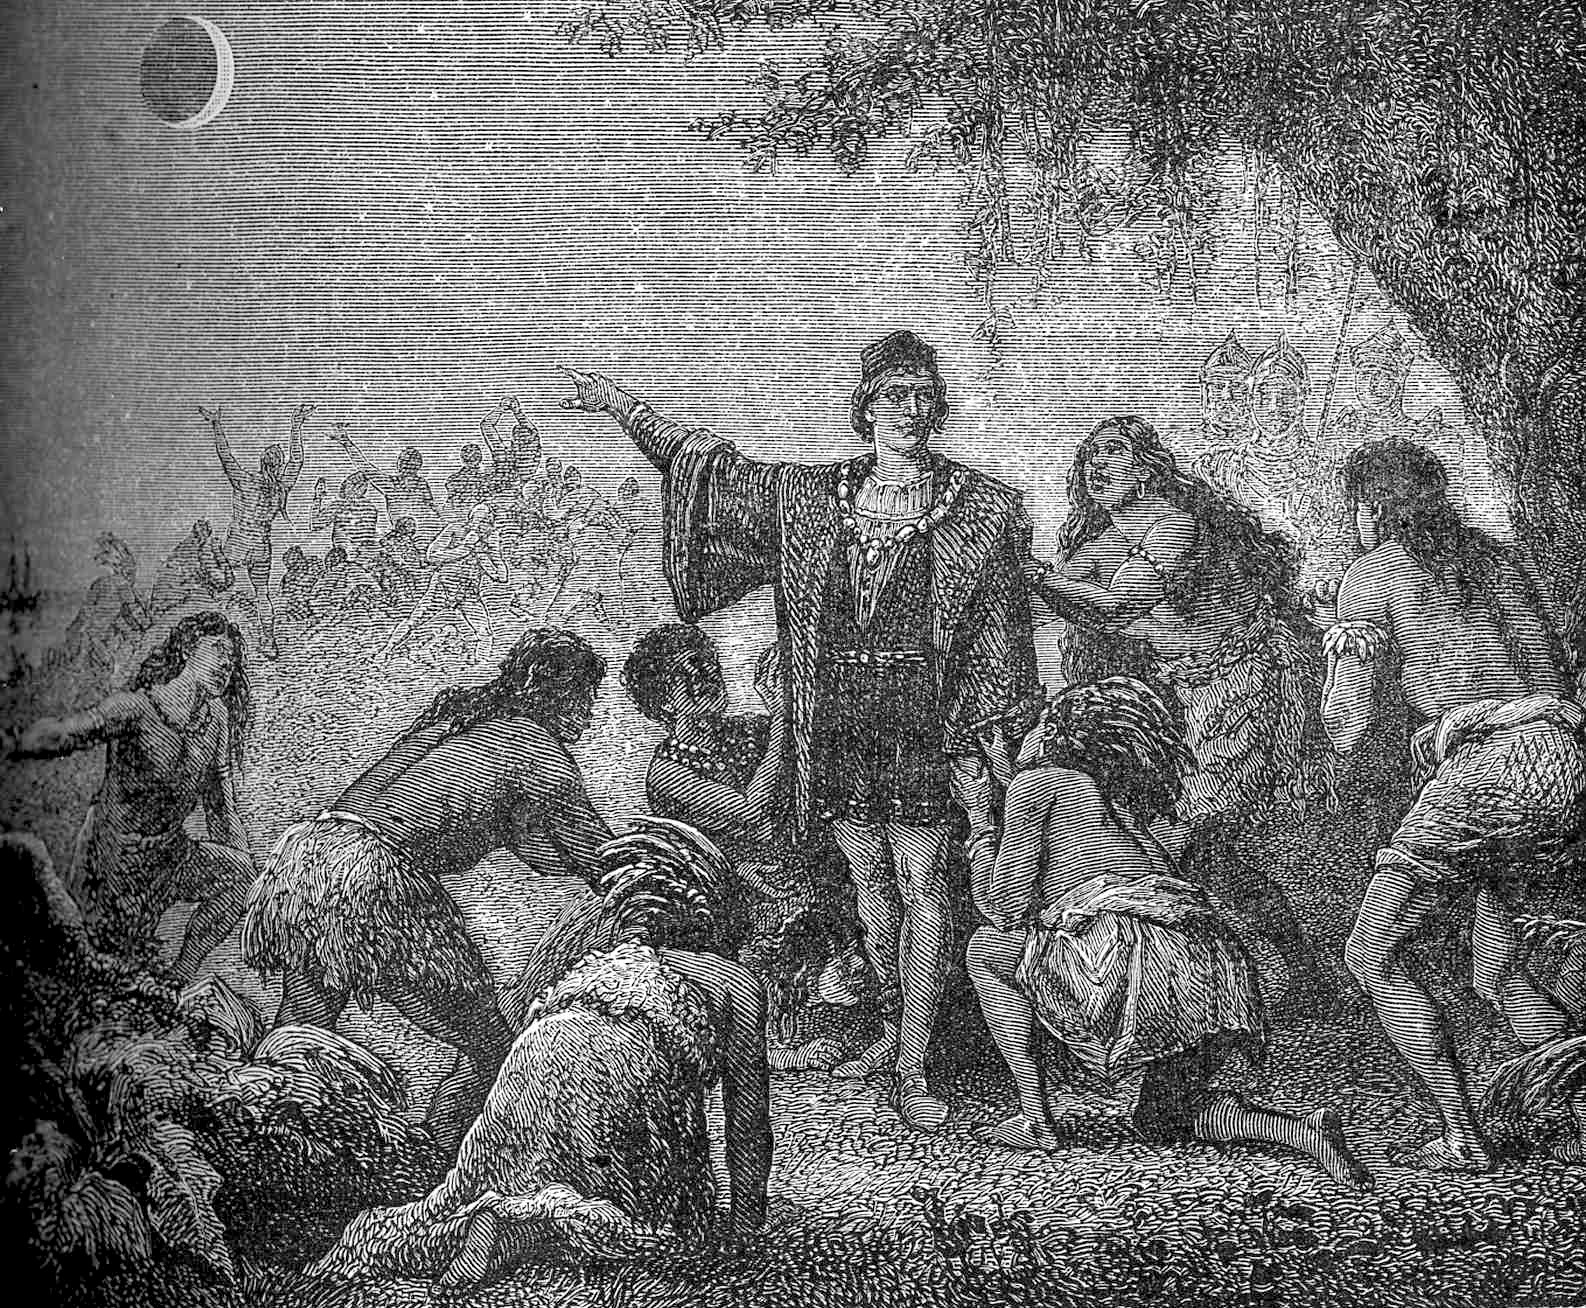 "L'éclipse de lune de Christophe Colomb." Columbus impressing local Jamaicans by foretelling the June 30, 1503 lunar eclipse. - FROM ASTRONOMIE POPULAIRE 1879, PUBLIC DOMAIN